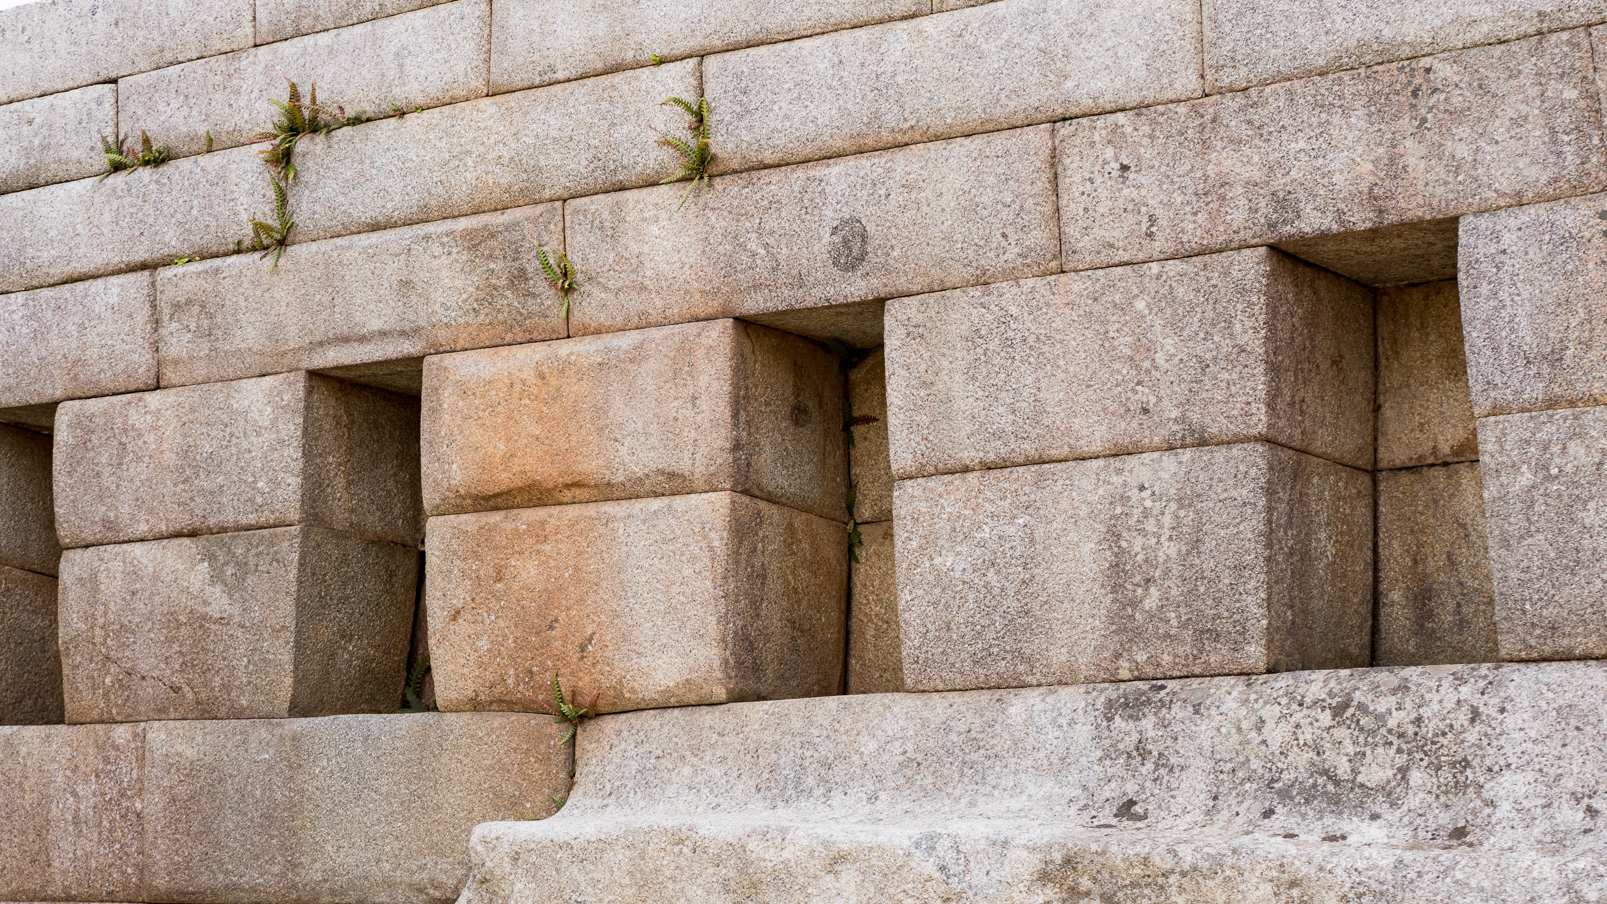 Machu Pichu, La Place Sacrée futu un espace où des cérémonies spéciales étaient réalisées